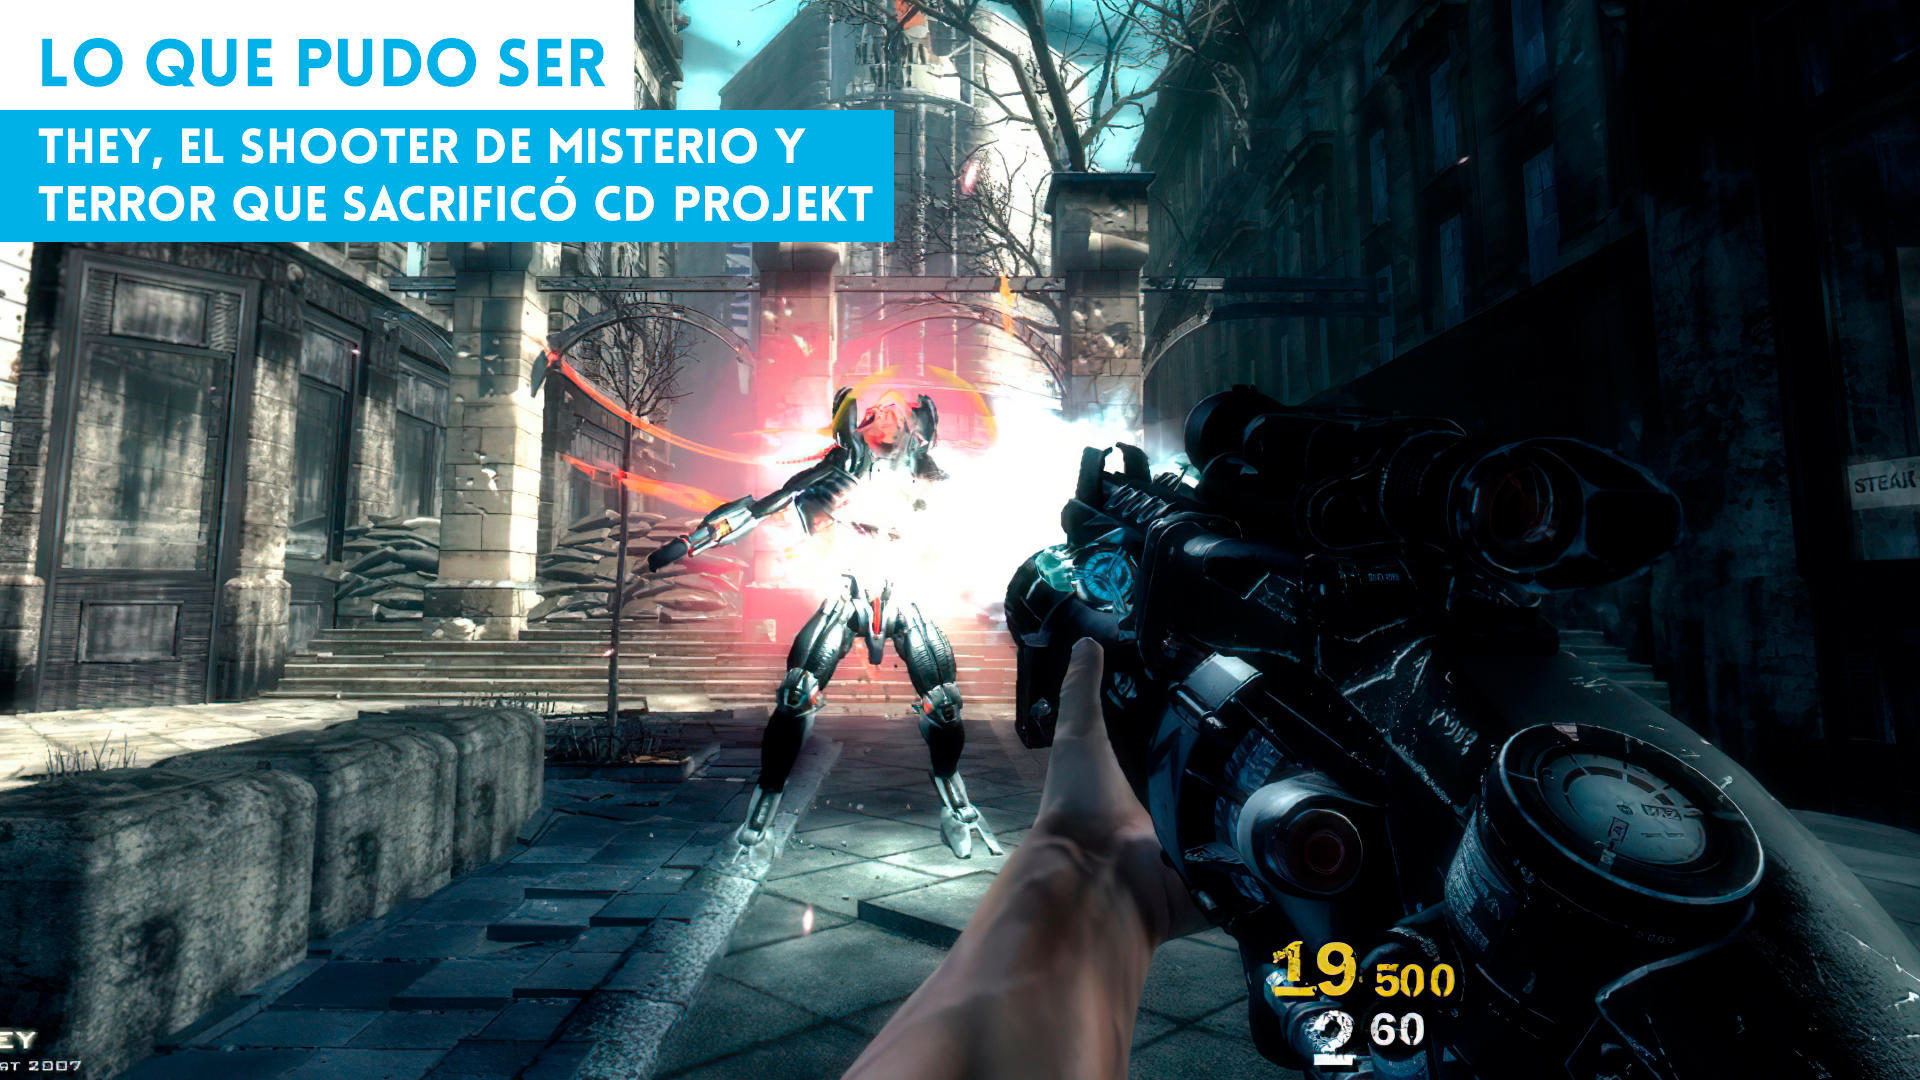 They, el shooter de misterio y terror que sacrific CD Projekt